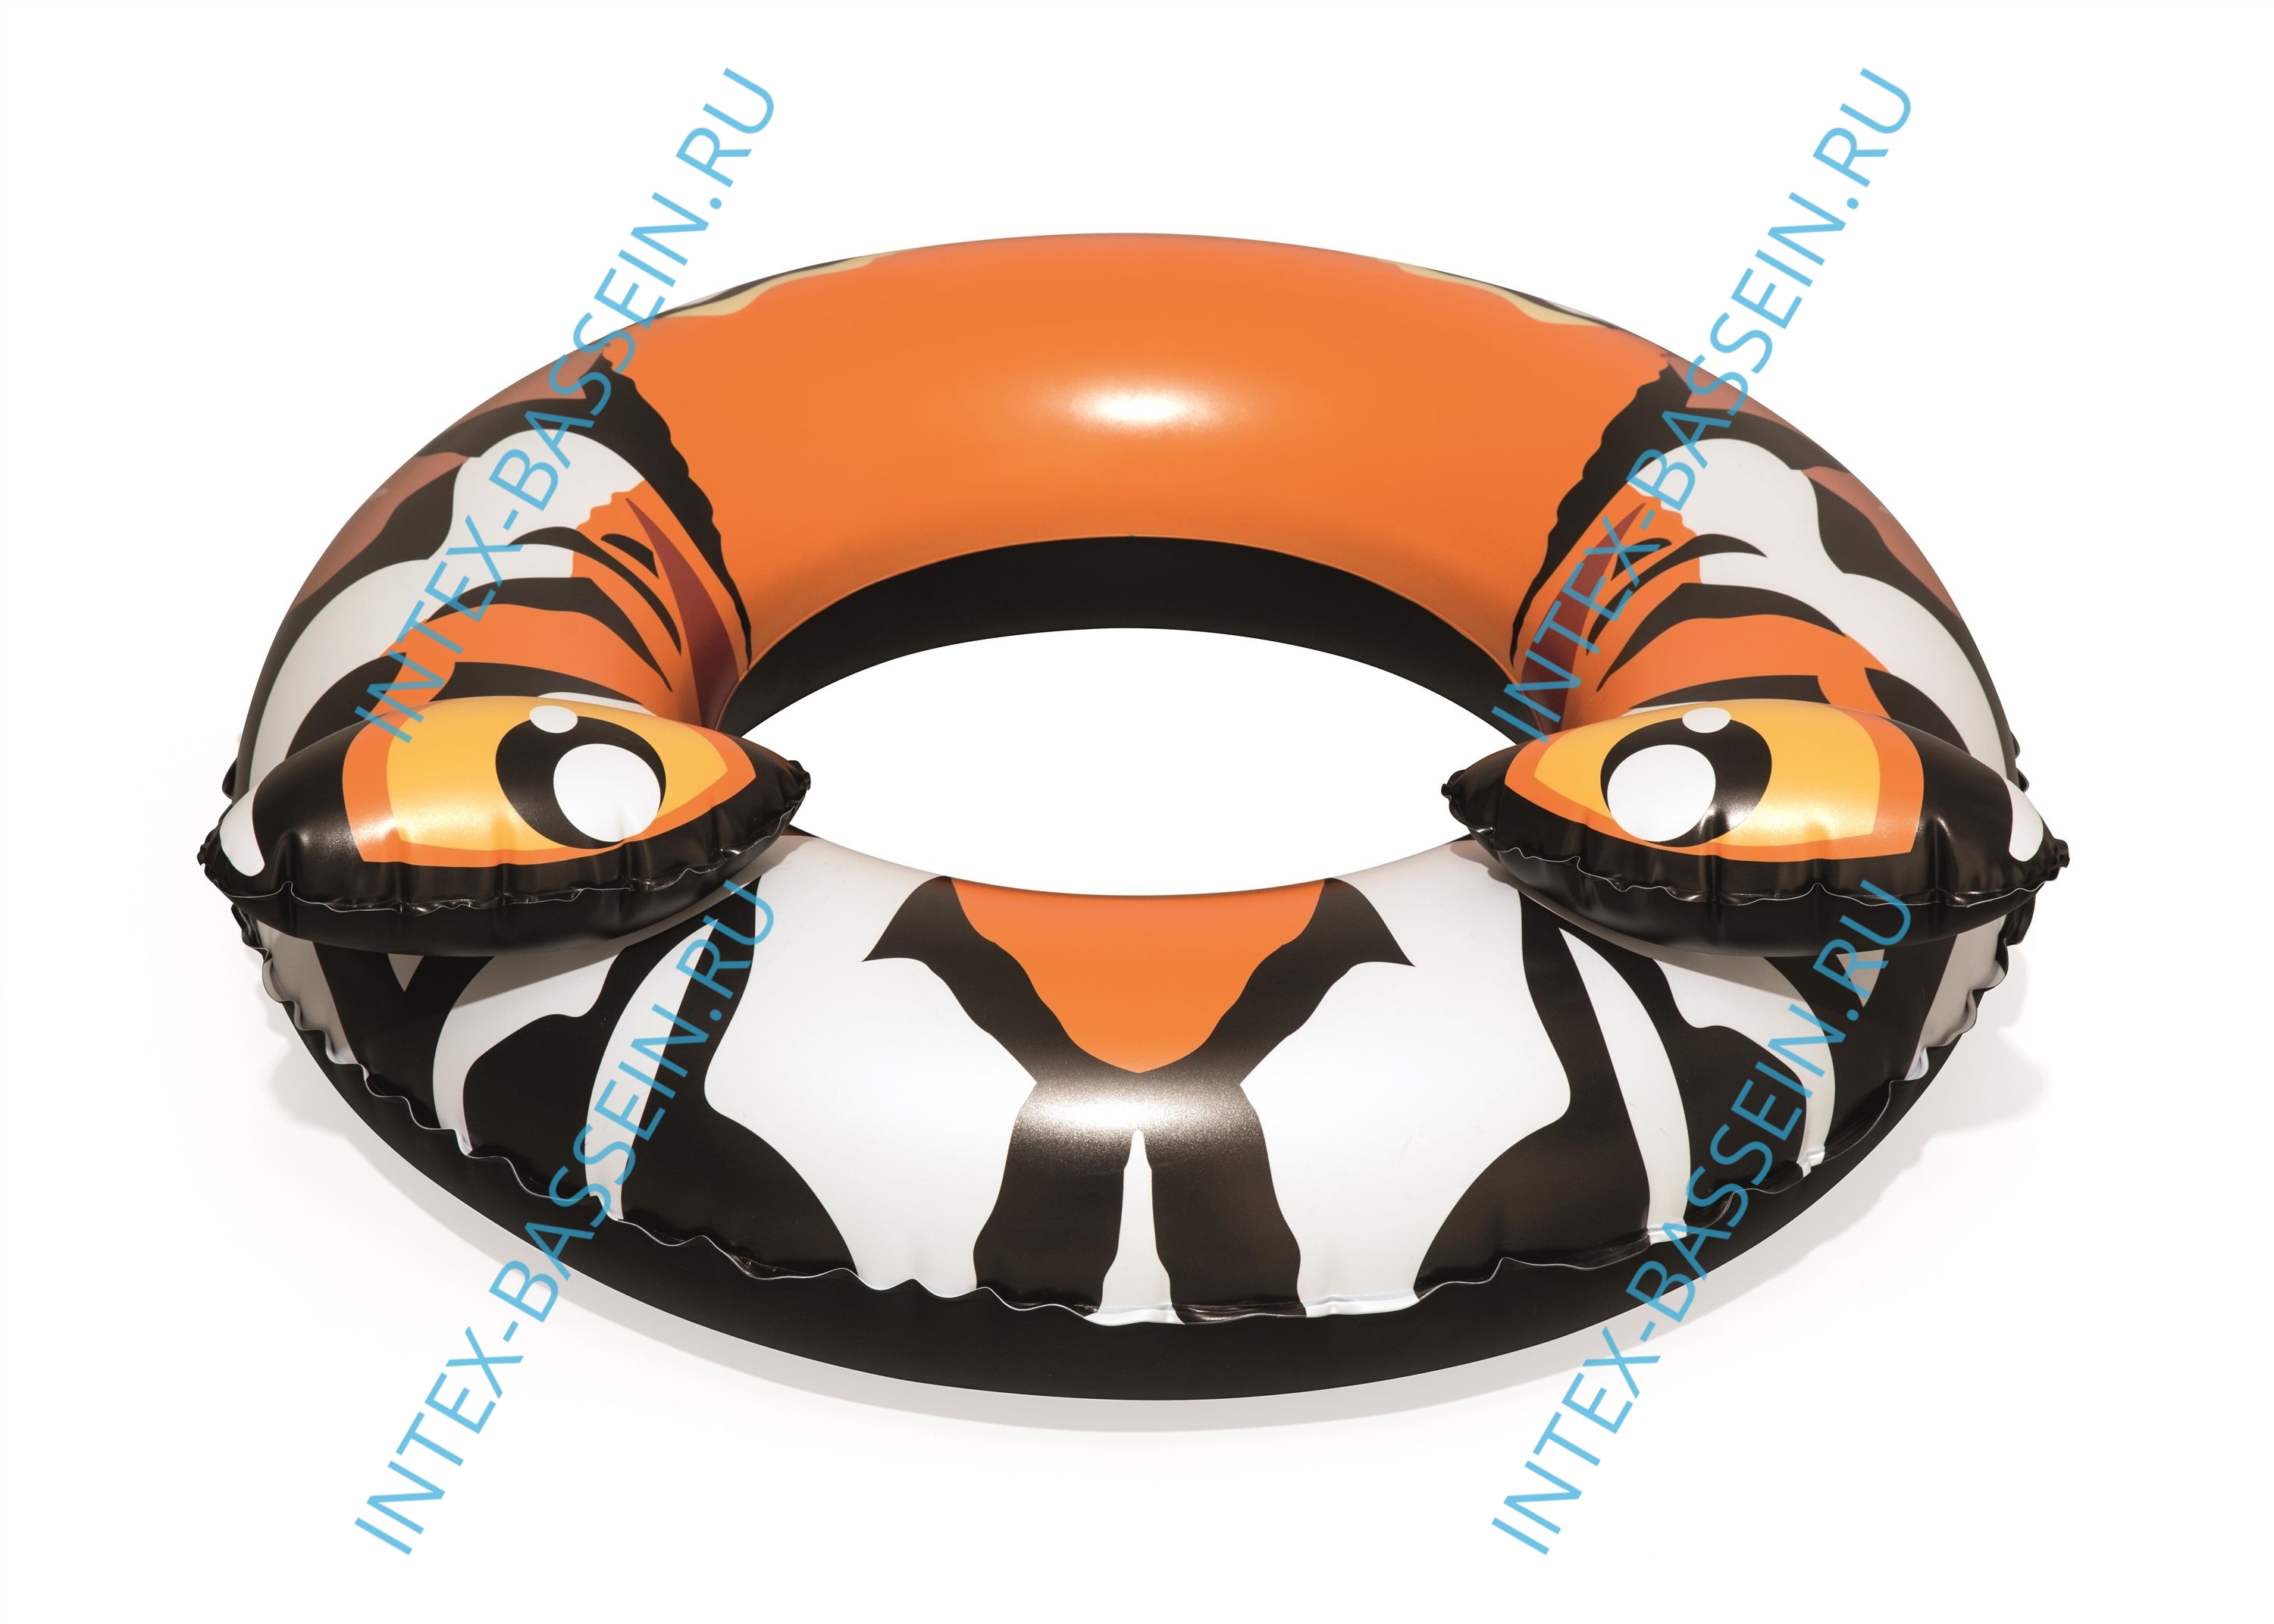 Надувной круг Bestway Predator Тигр 91 см, артикул 36122-Т